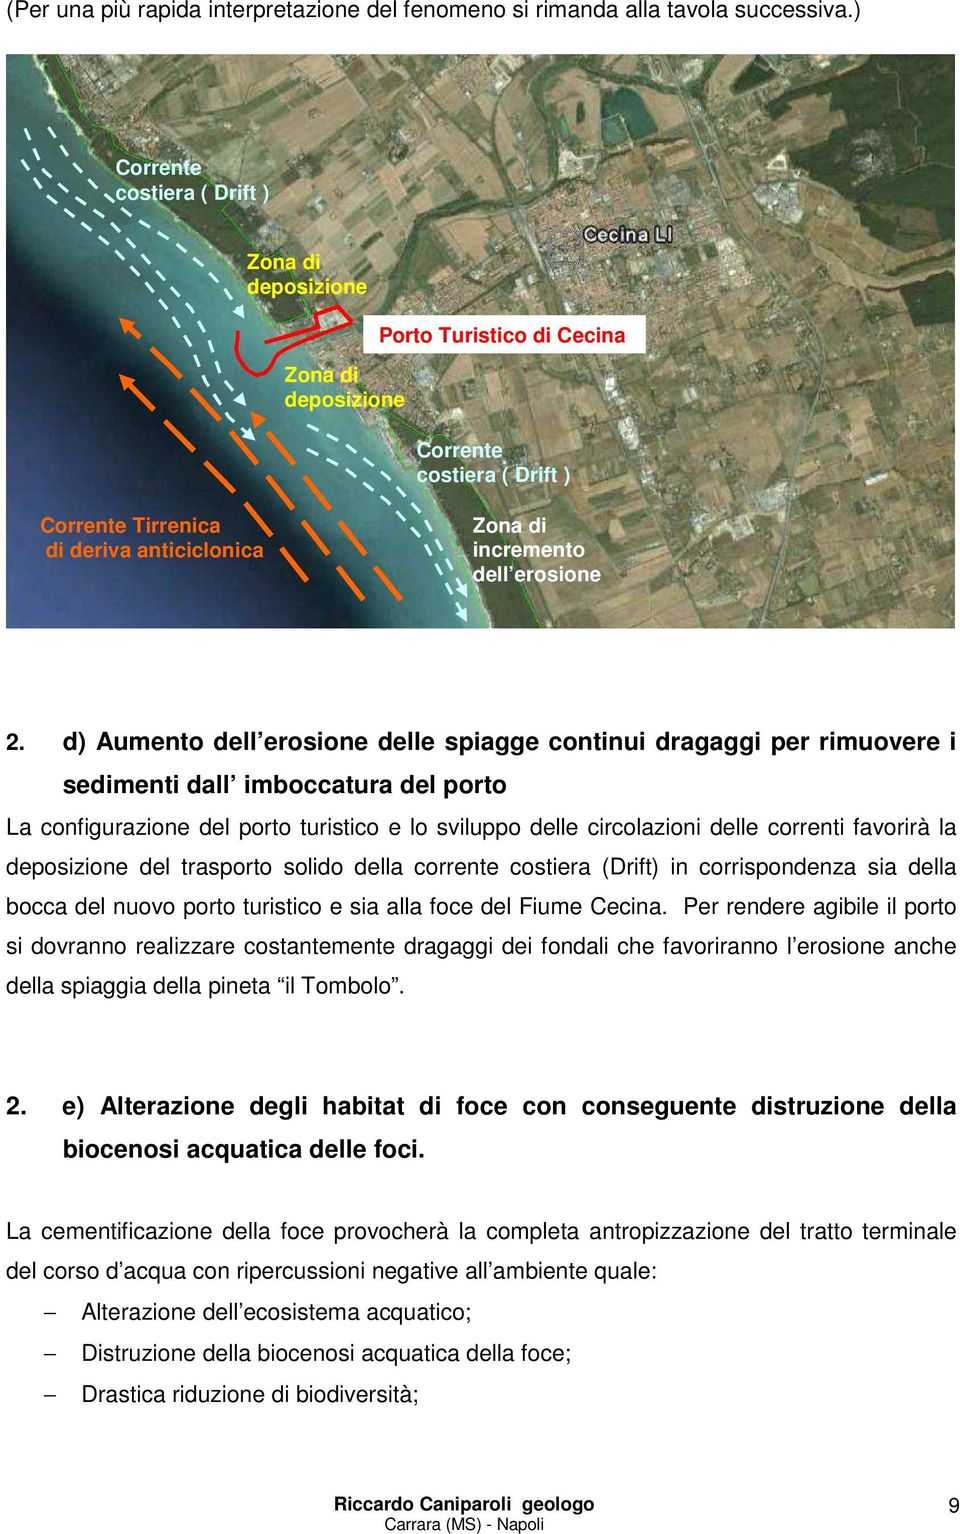 2. d) Aumento dell erosione delle spiagge continui dragaggi per rimuovere i sedimenti dall imboccatura del porto La configurazione del porto turistico e lo sviluppo delle circolazioni delle correnti